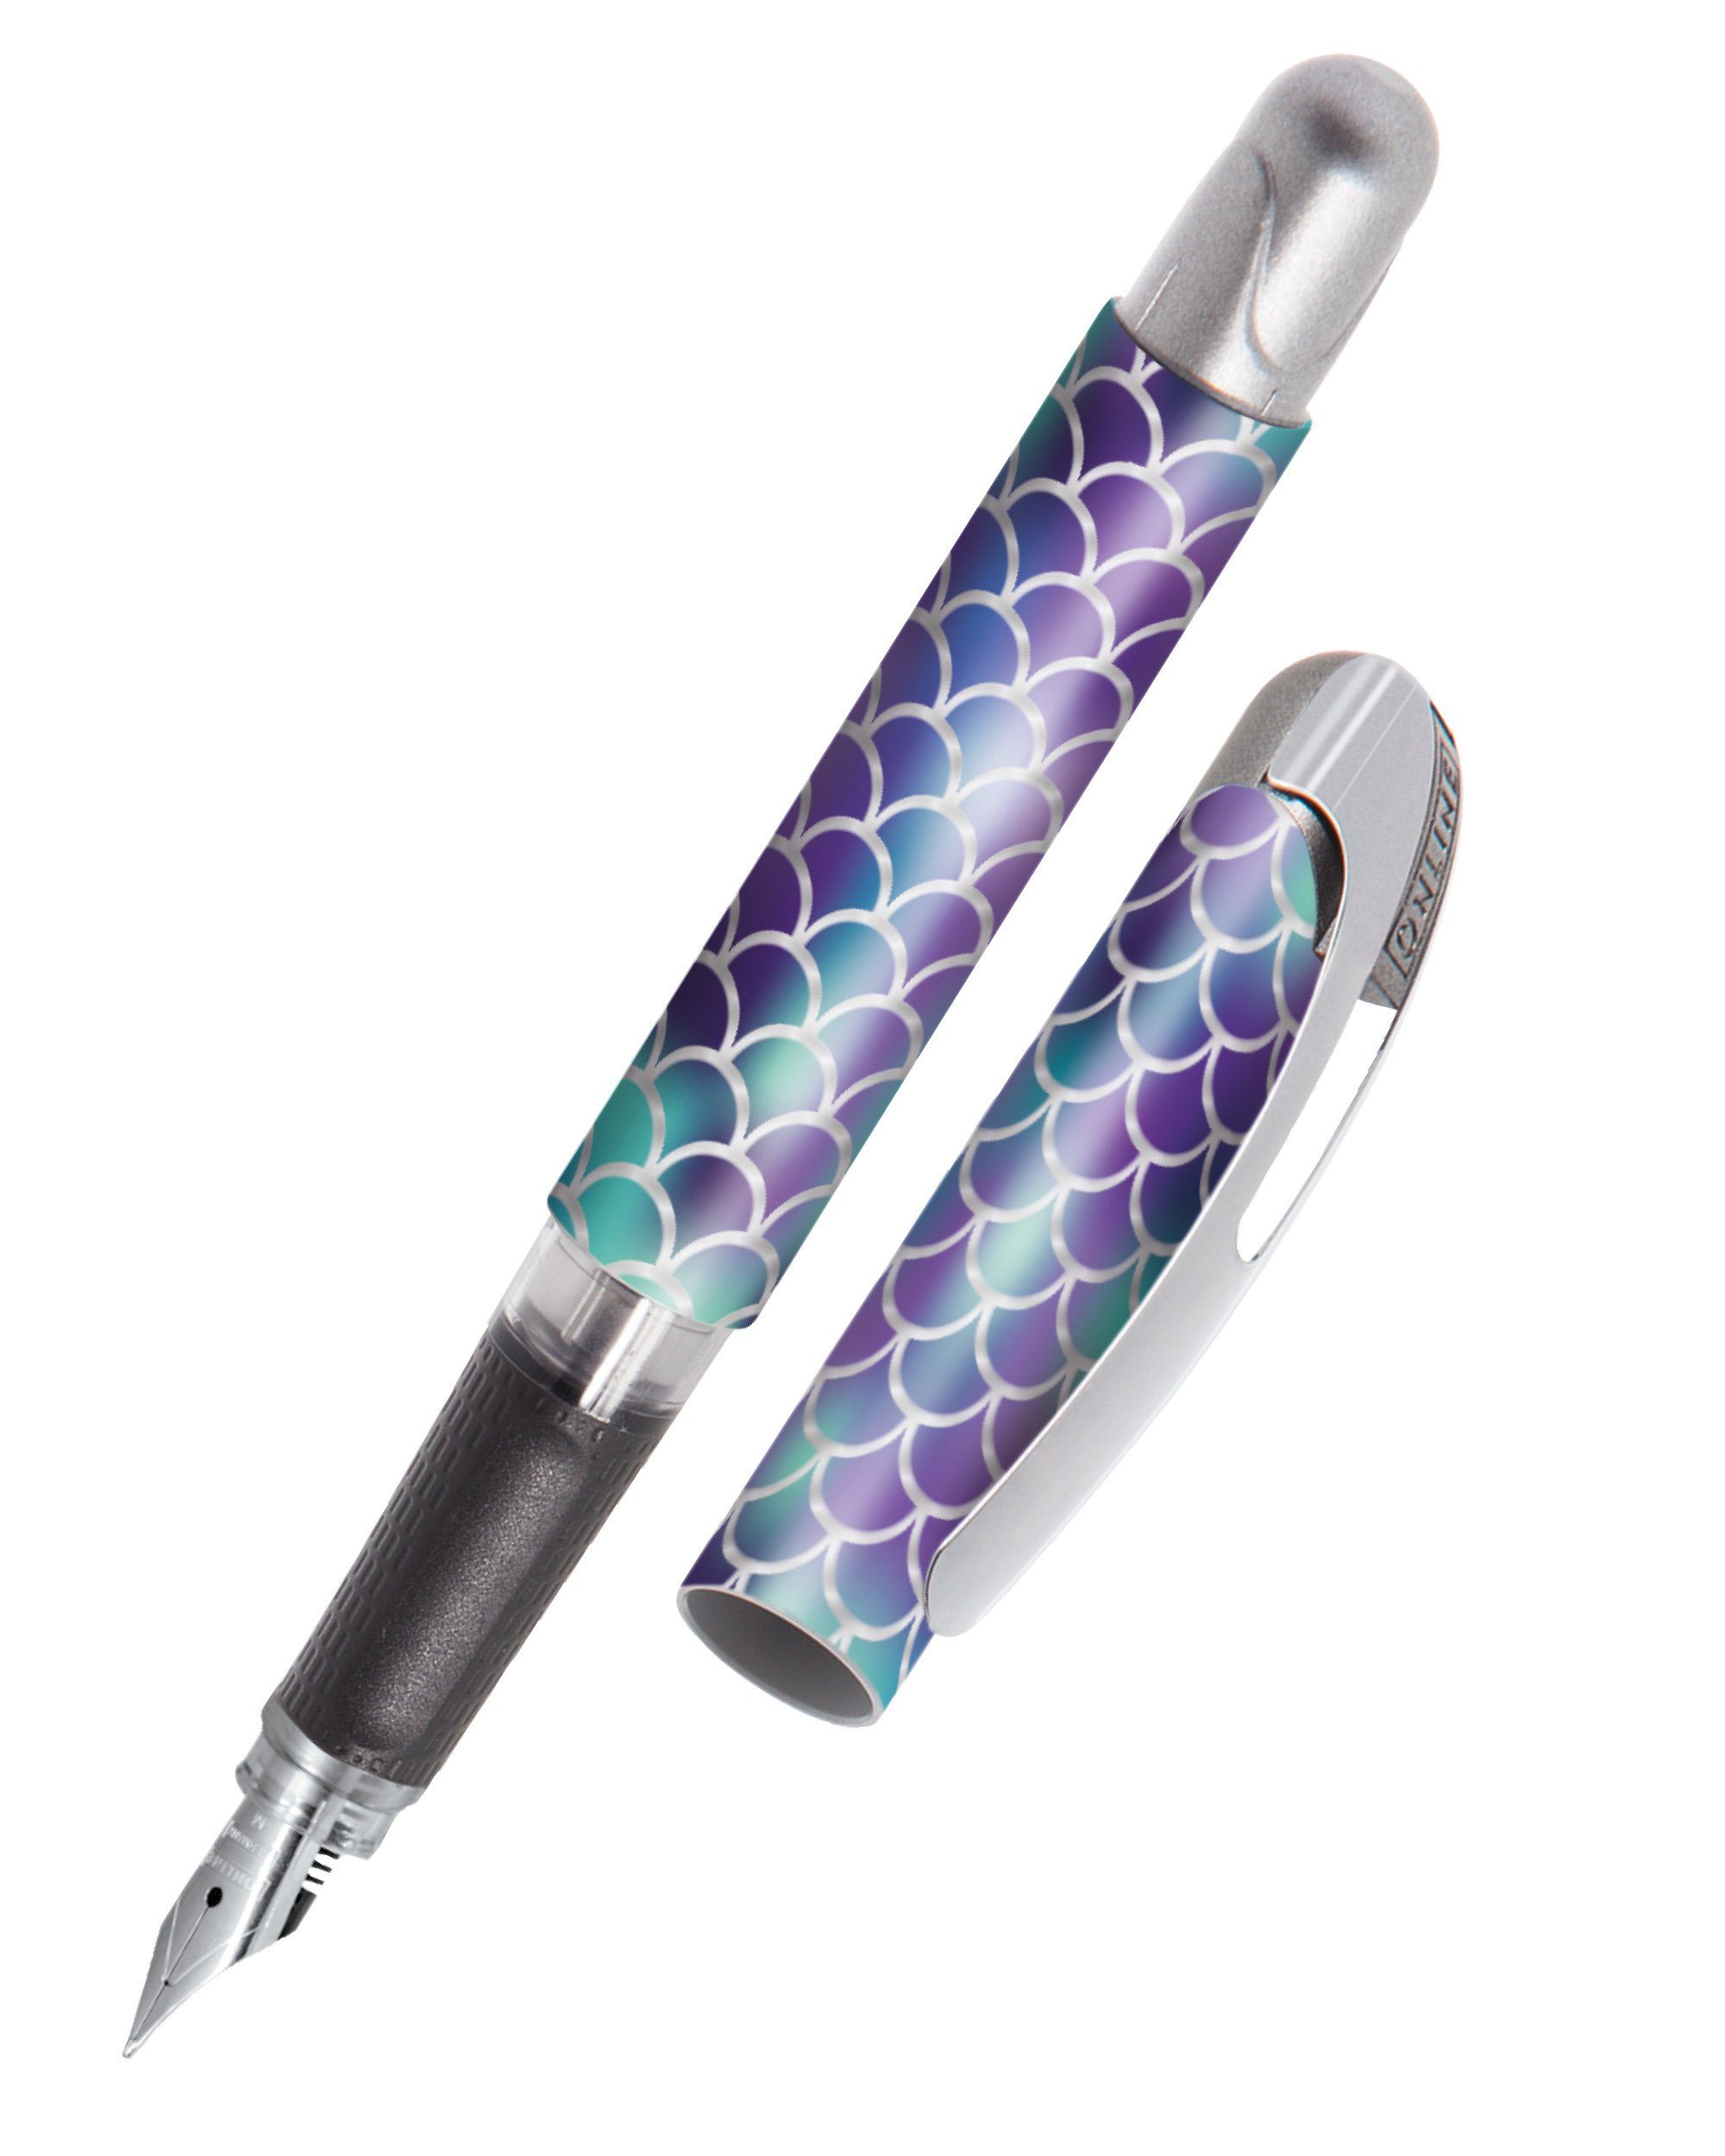 Online Pen Füller hergestellt Schule, Dreams die ideal ergonomisch, Shiny College Deutschland in Füllhalter, für